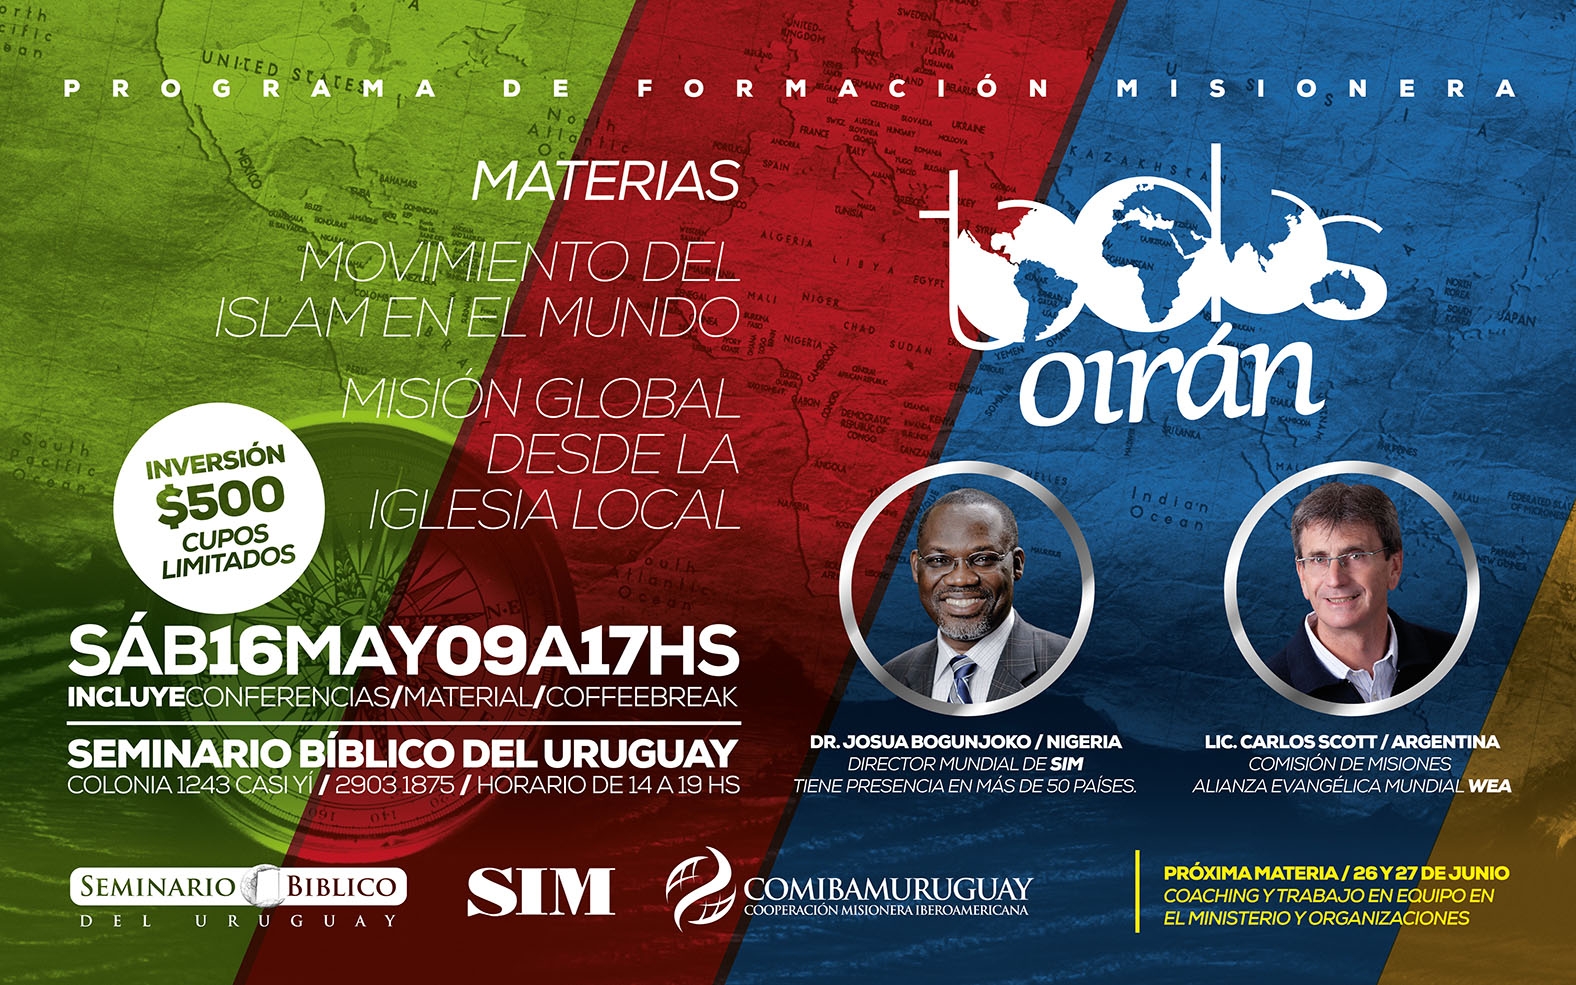 COMIBAM Uruguay: Programa de Formación Misionera “Todos Oirán”